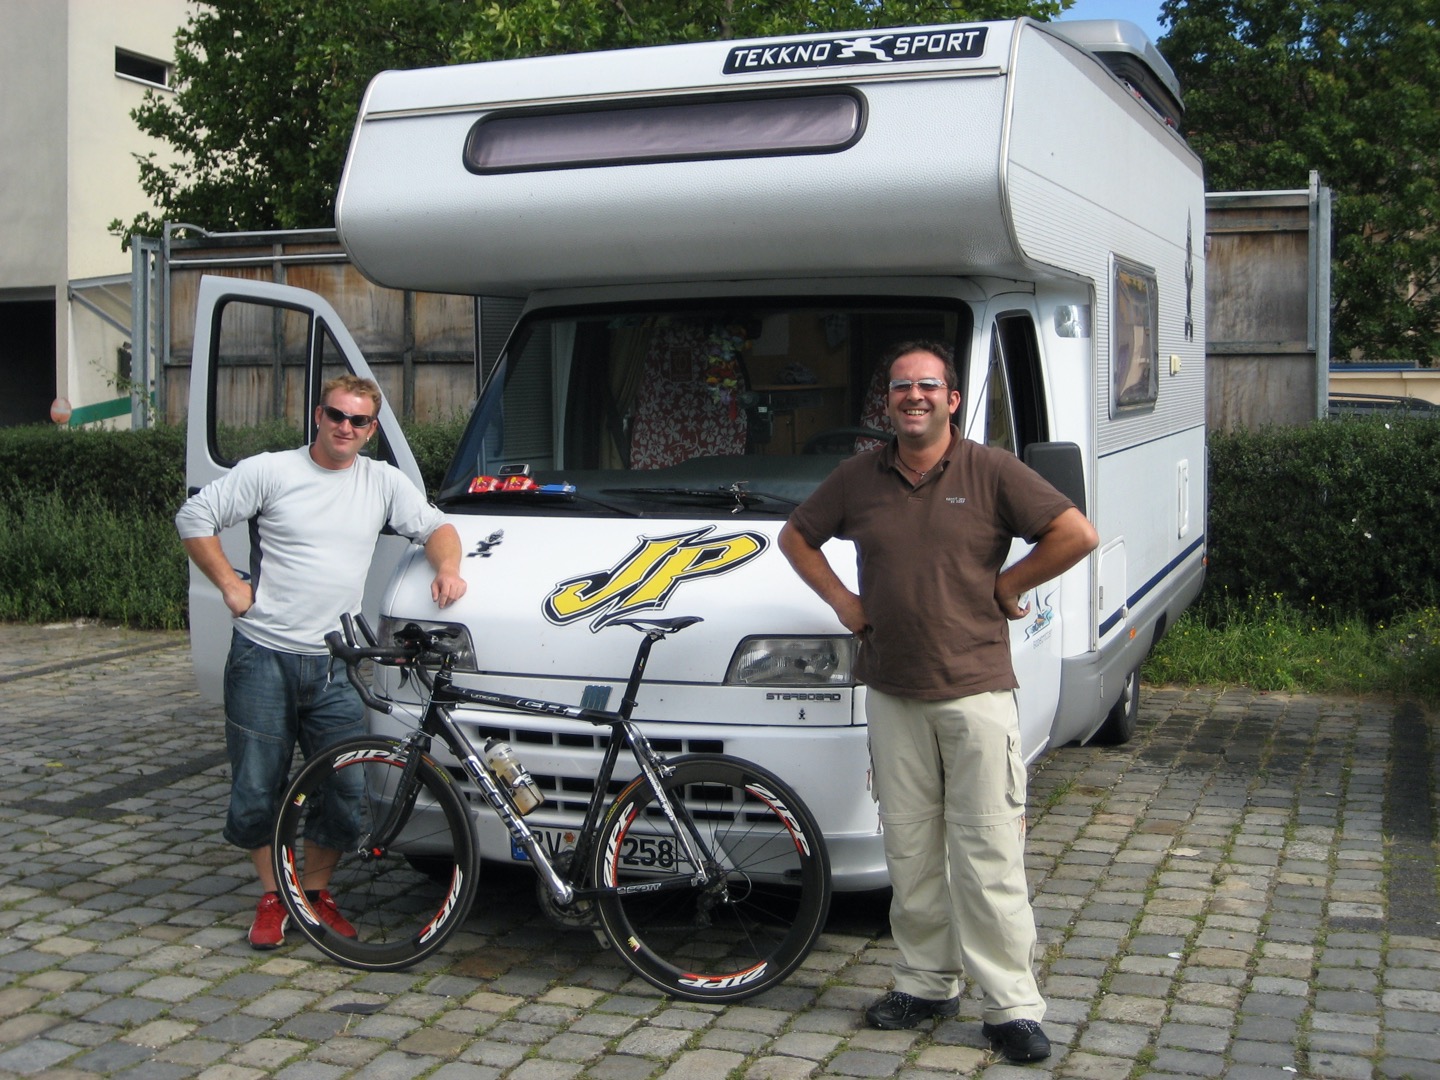 2007-08-17-deutschland-tour-time-trail02.jpg